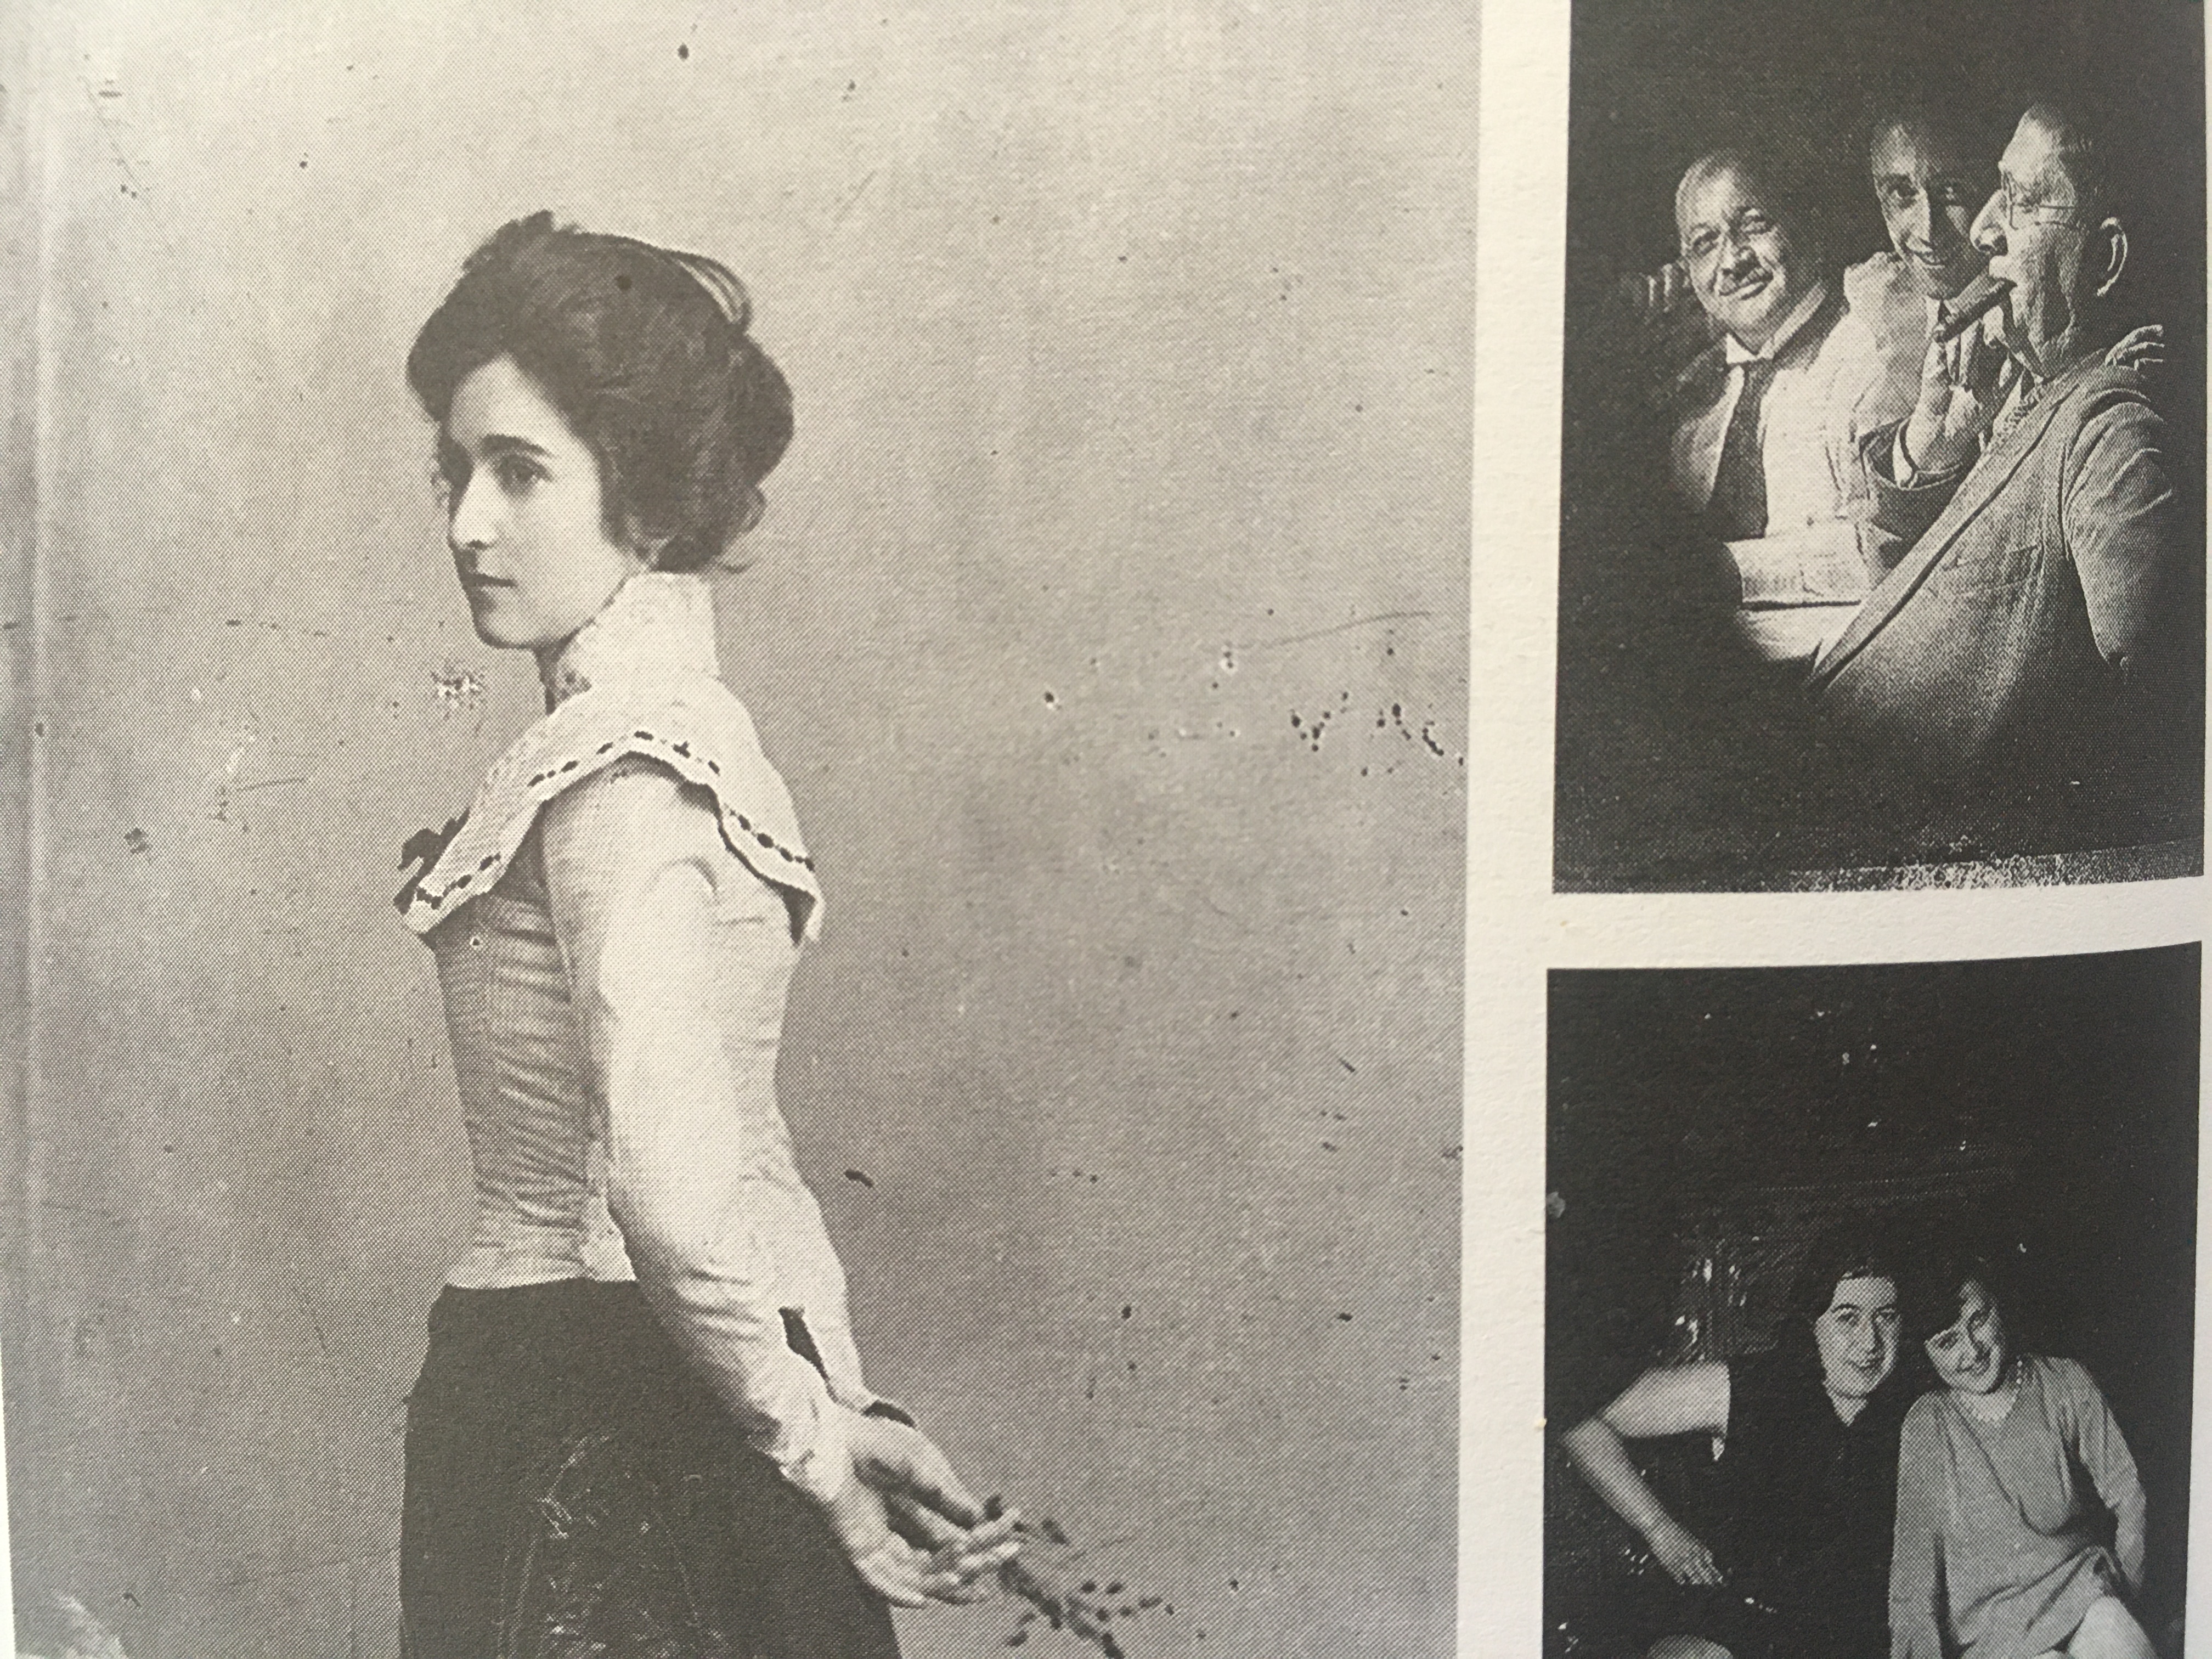   Ein vorläufig gutes Ende | Die Sammlung des jüdischen Fotostudios Mittelmann ist nach Jahrzehnten nun in die Hände der Öffentlichkeit gelangt  